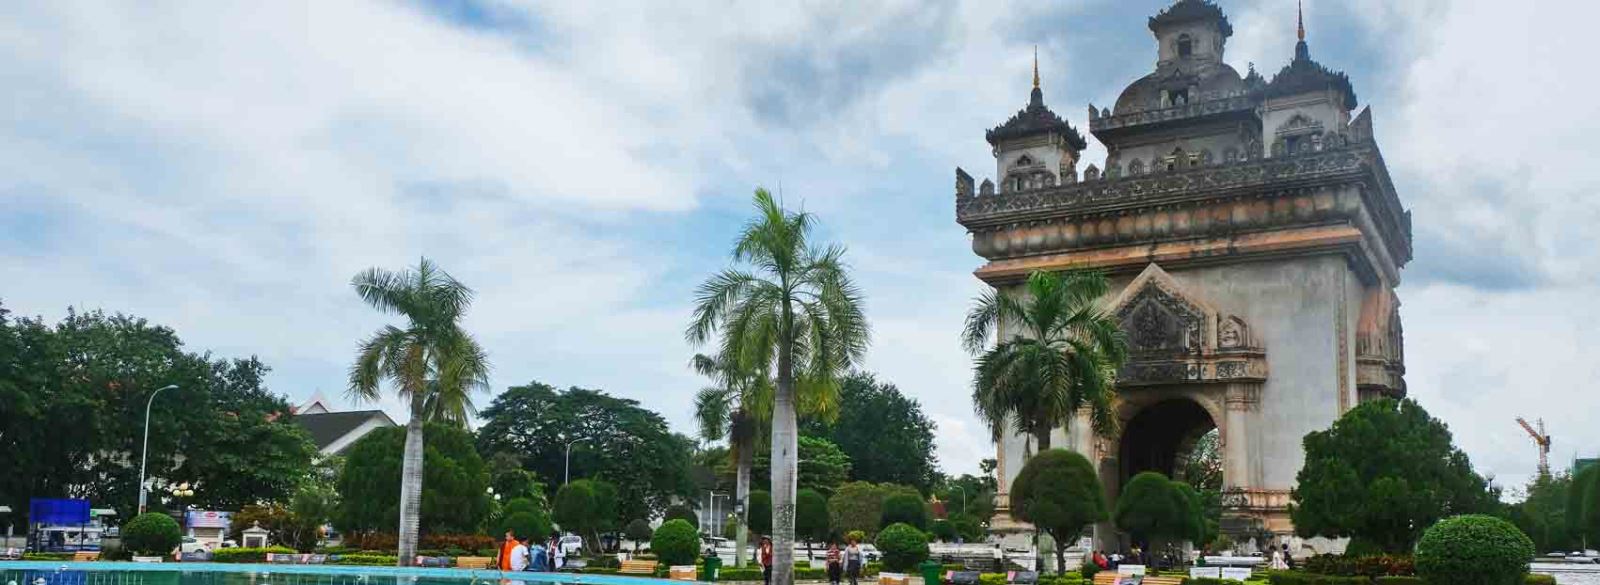 2. Arco di Patuxai - Vientiane